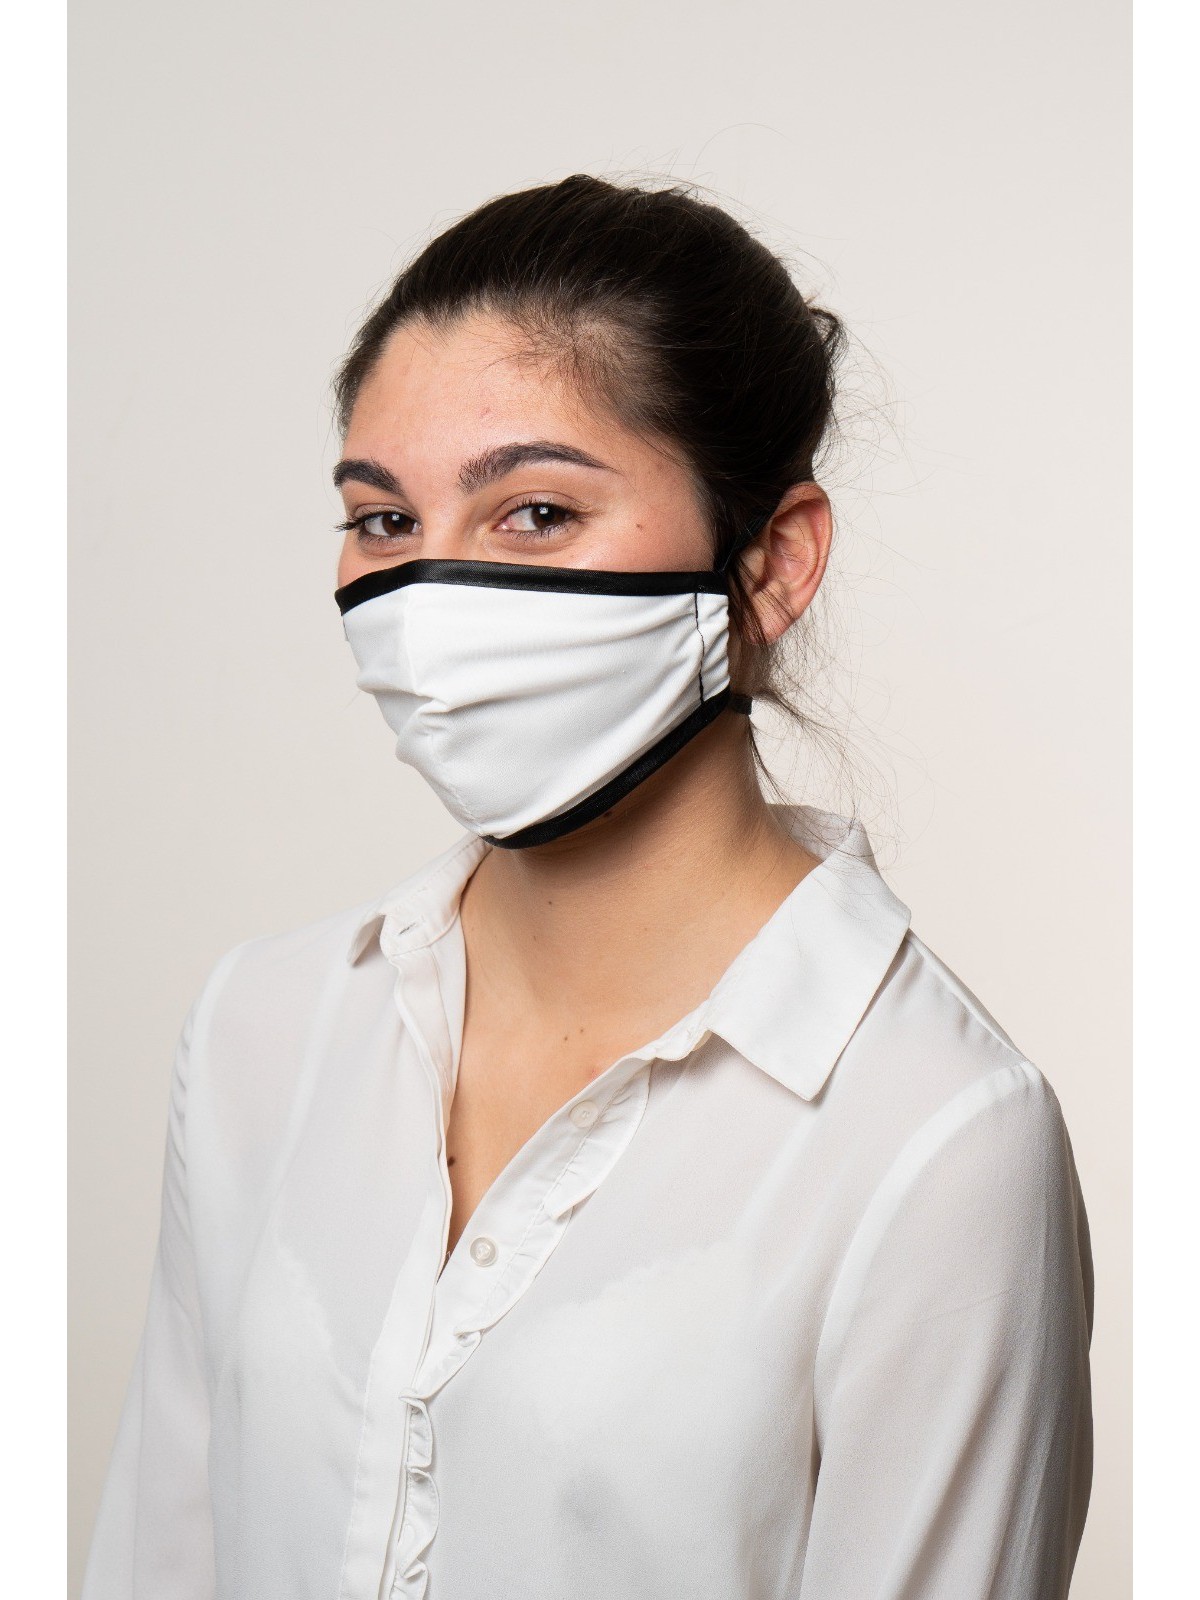 08-015 Masque de protection Bactéricide réutilisable et lavable personnalisé